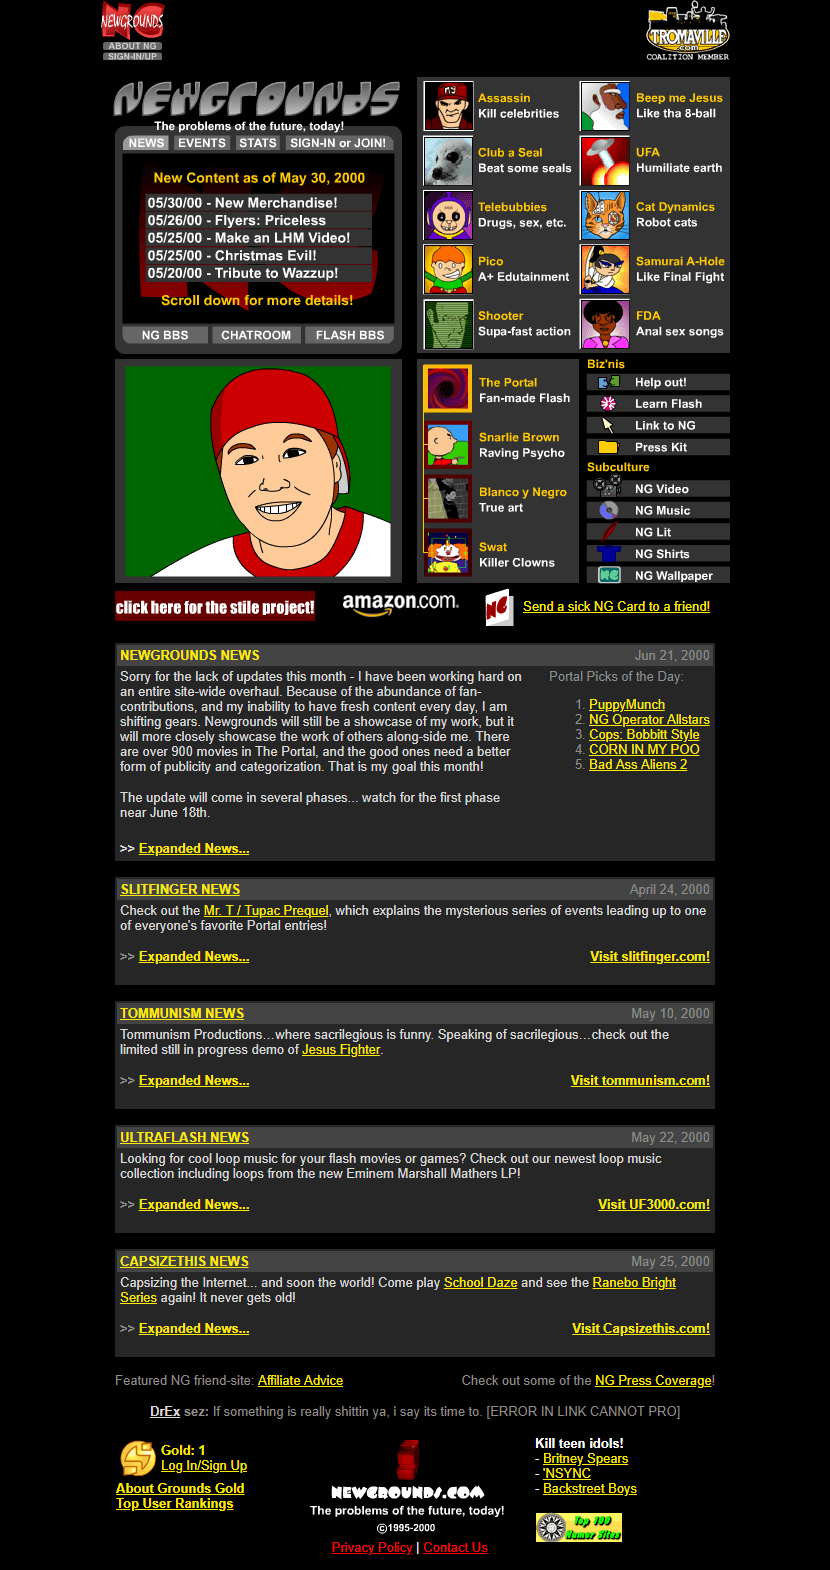 Newgrounds website in 2000